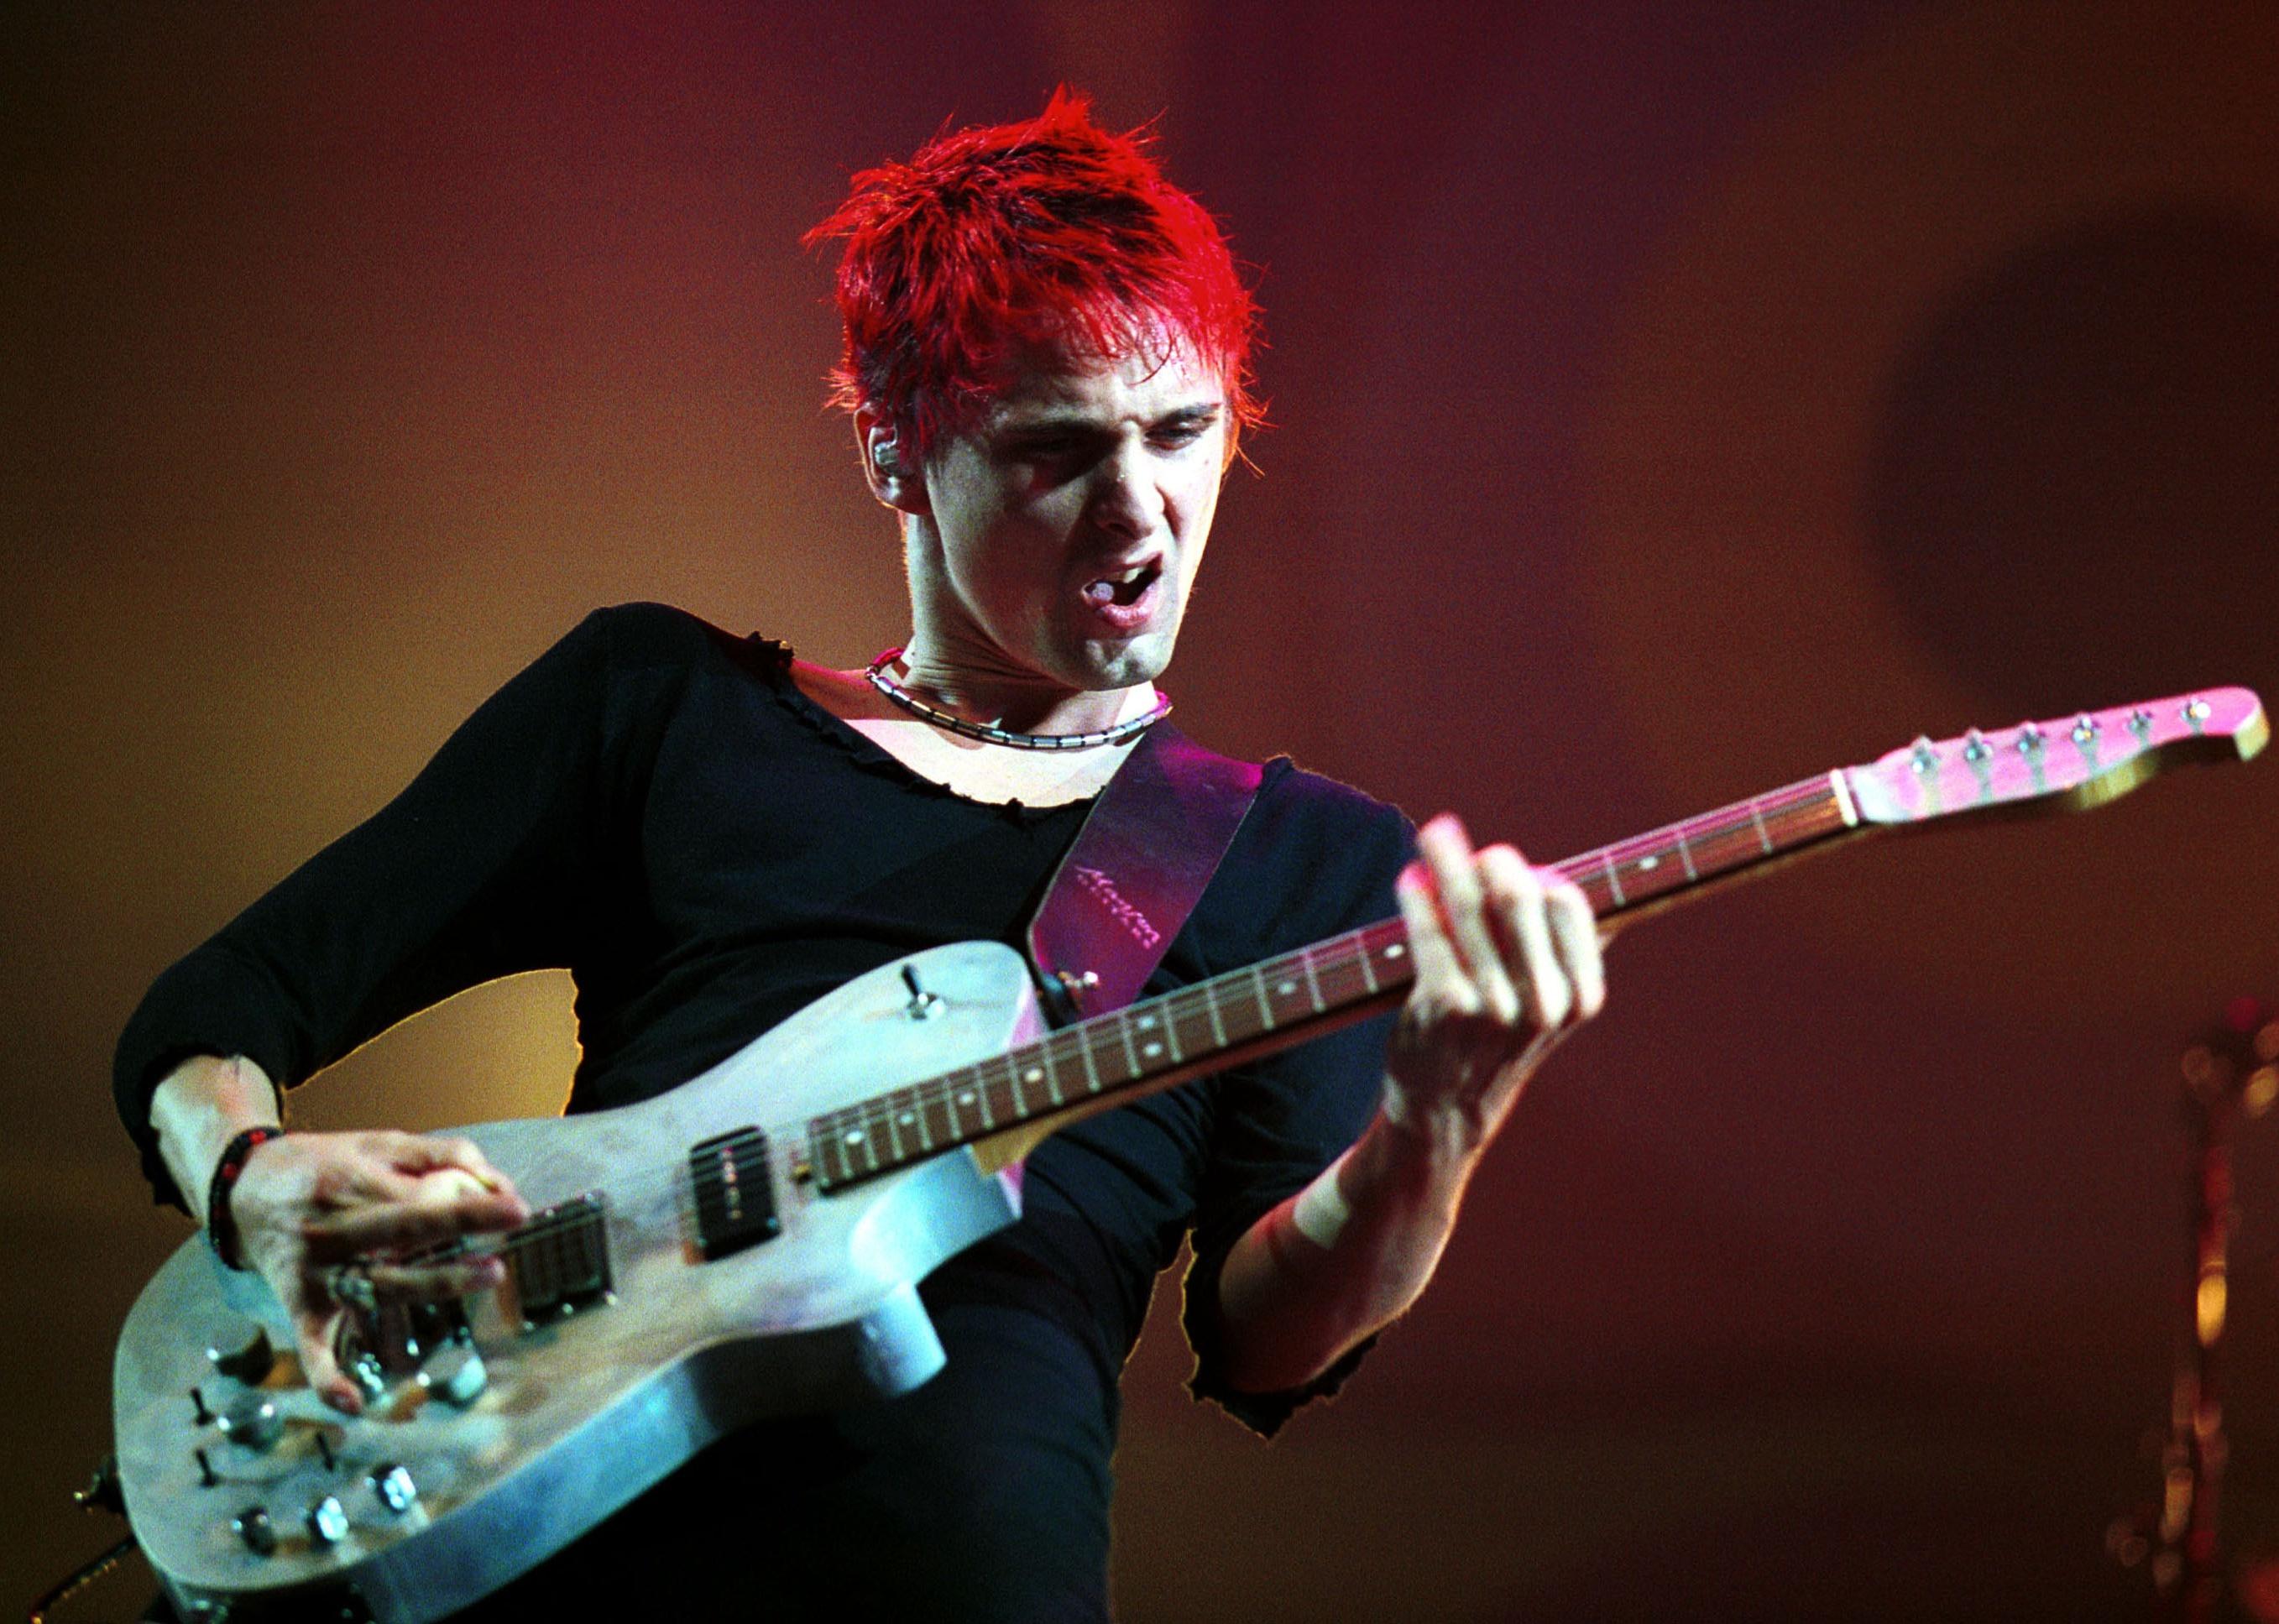 Muse's Matt Bellamy plays a guitar